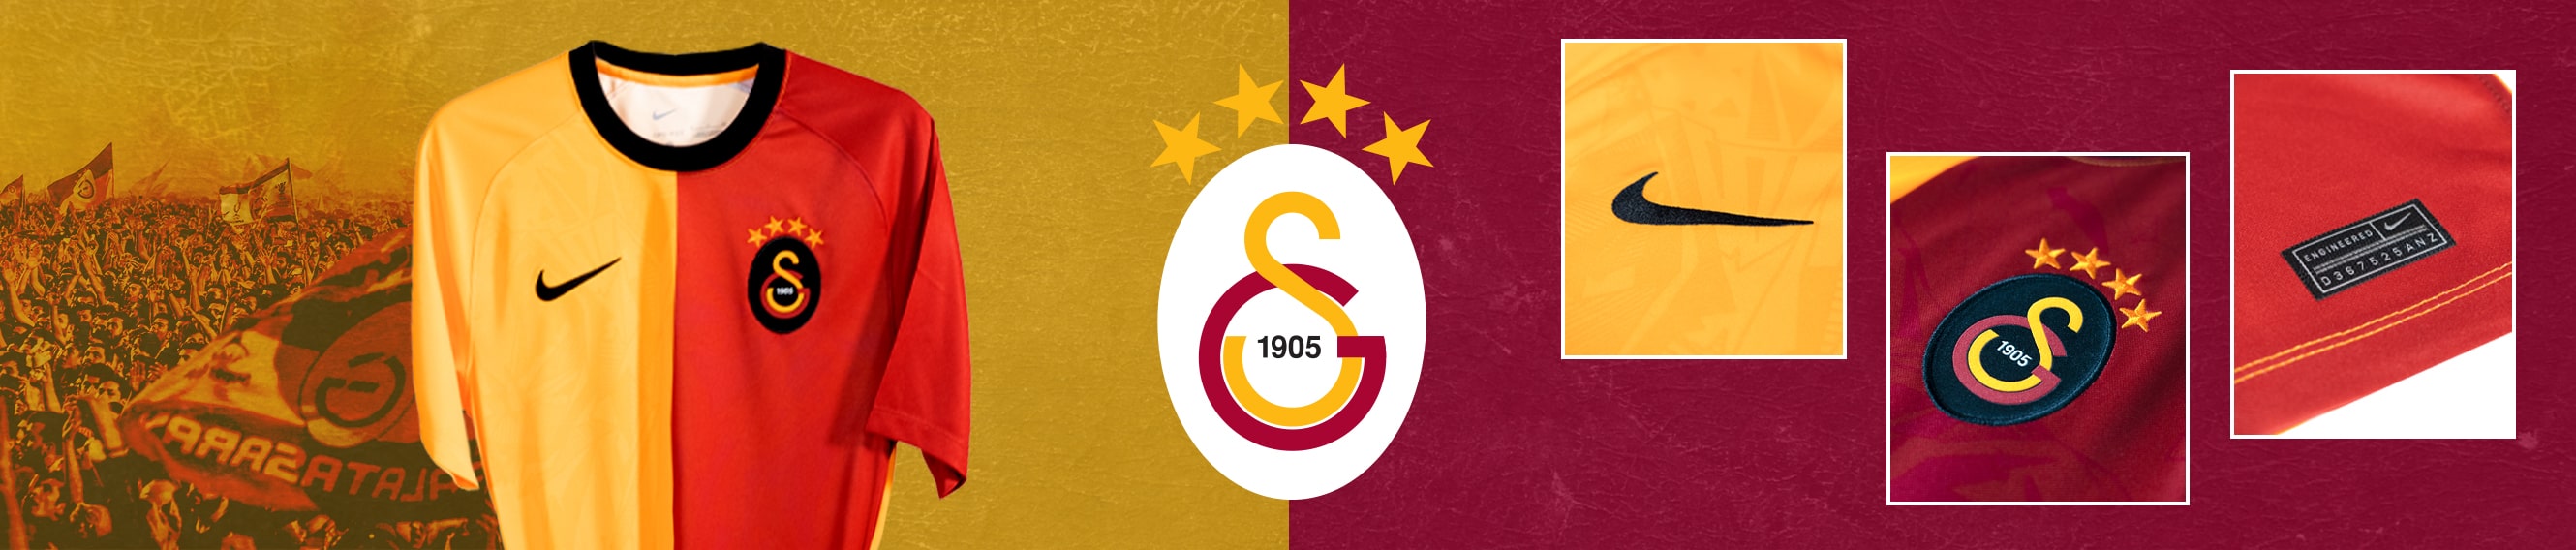 Springen medaillewinnaar controller Galatasaray Online Fanshop - Voetbalshop.be